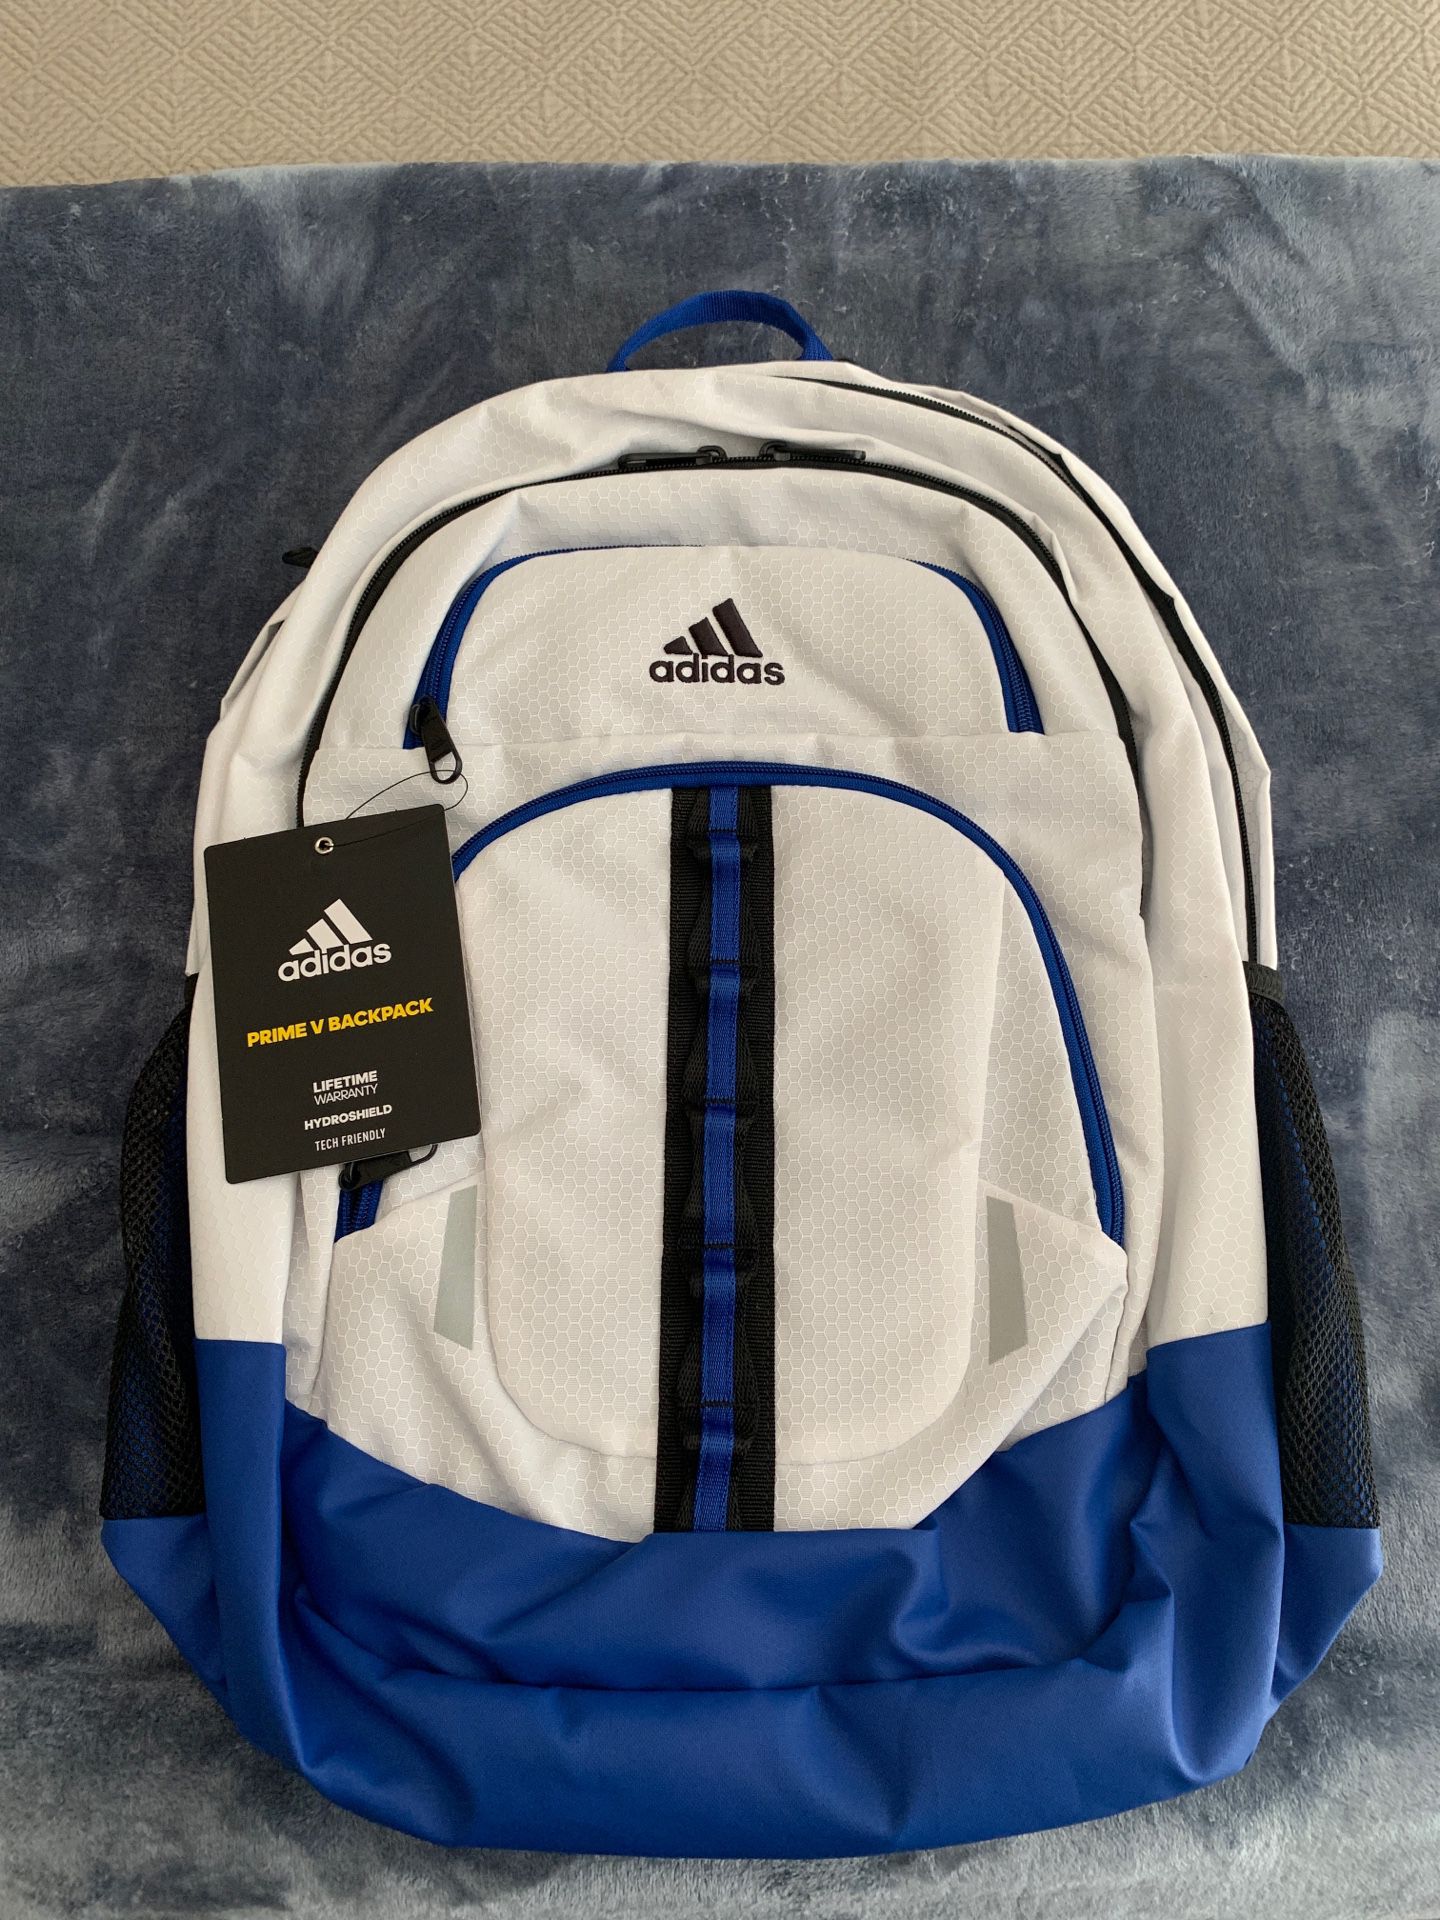 Adidas - Prime V Backpack (Brand New!)